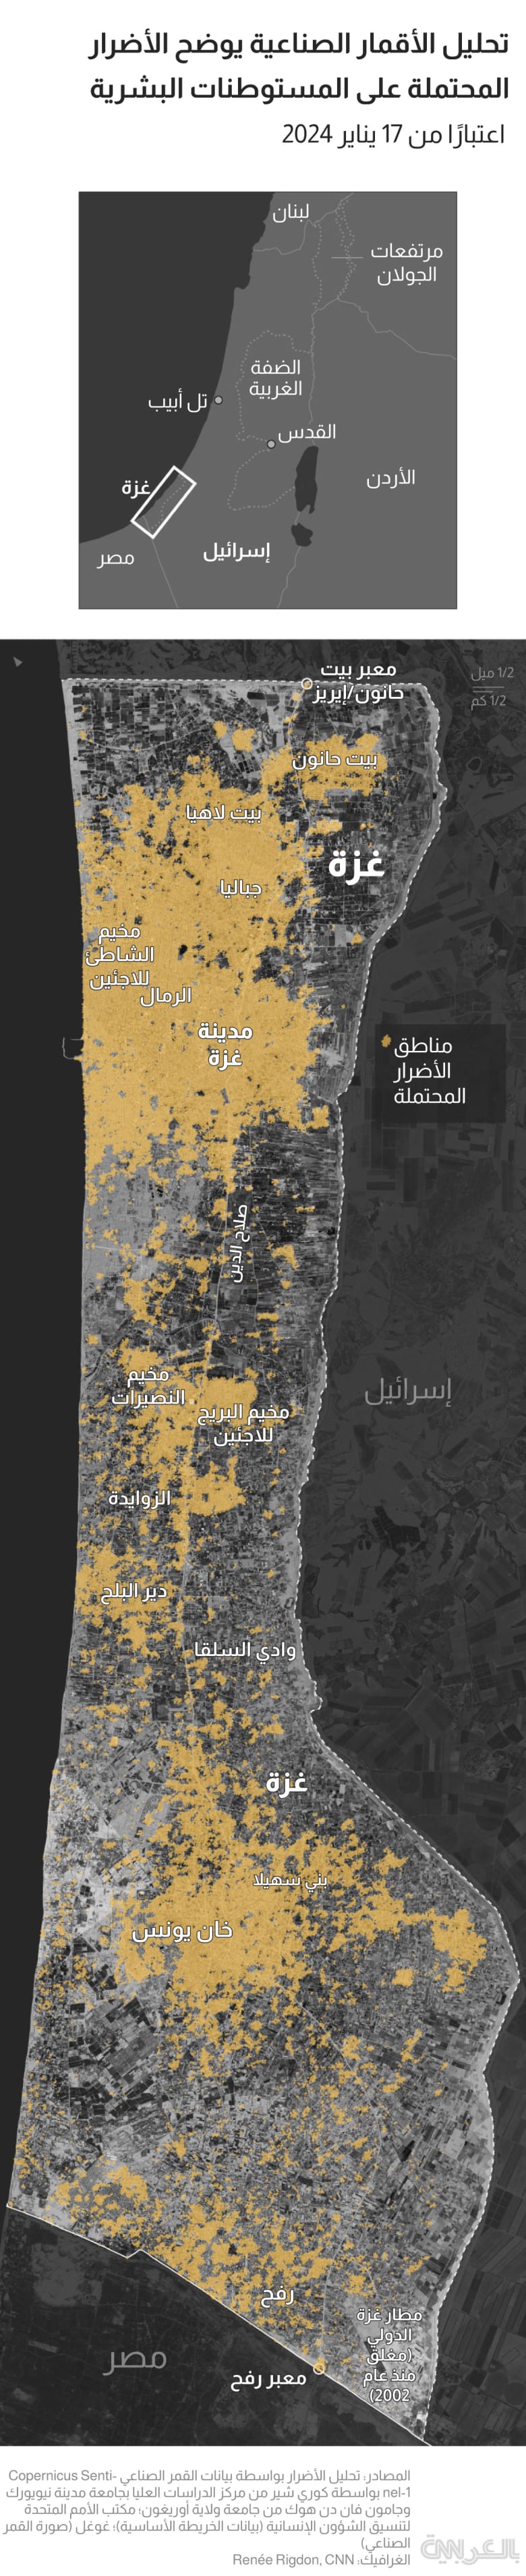 Gaza-setellite-damage-jan17